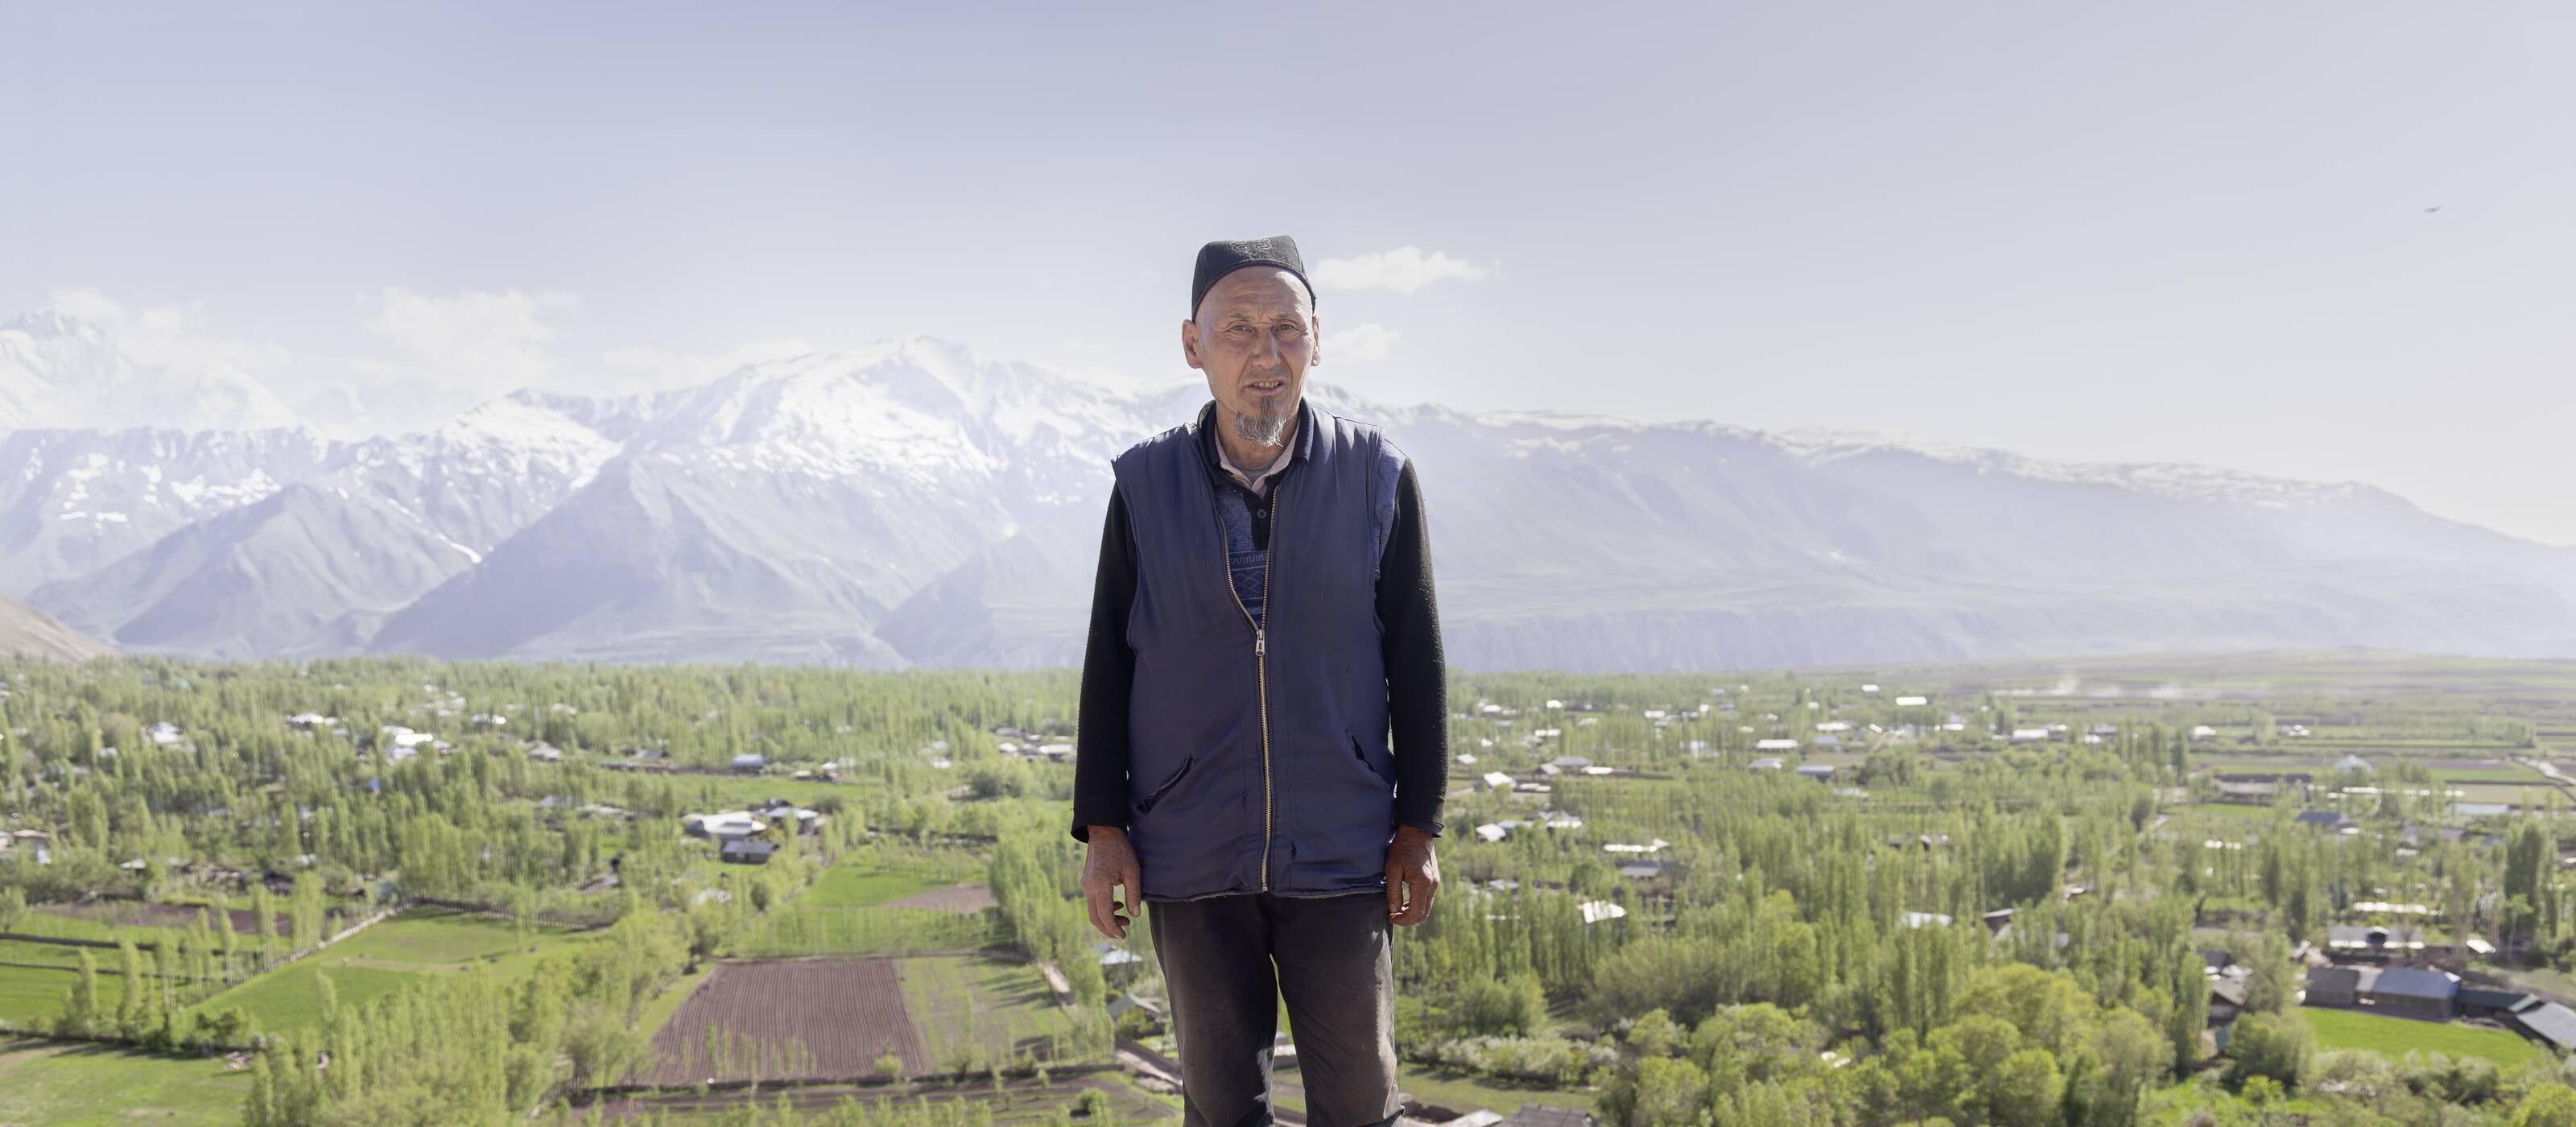 Shokirjon Shamirov su un promontorio davanti a Shirinob, il villaggio del Tagikistan in cui vive.